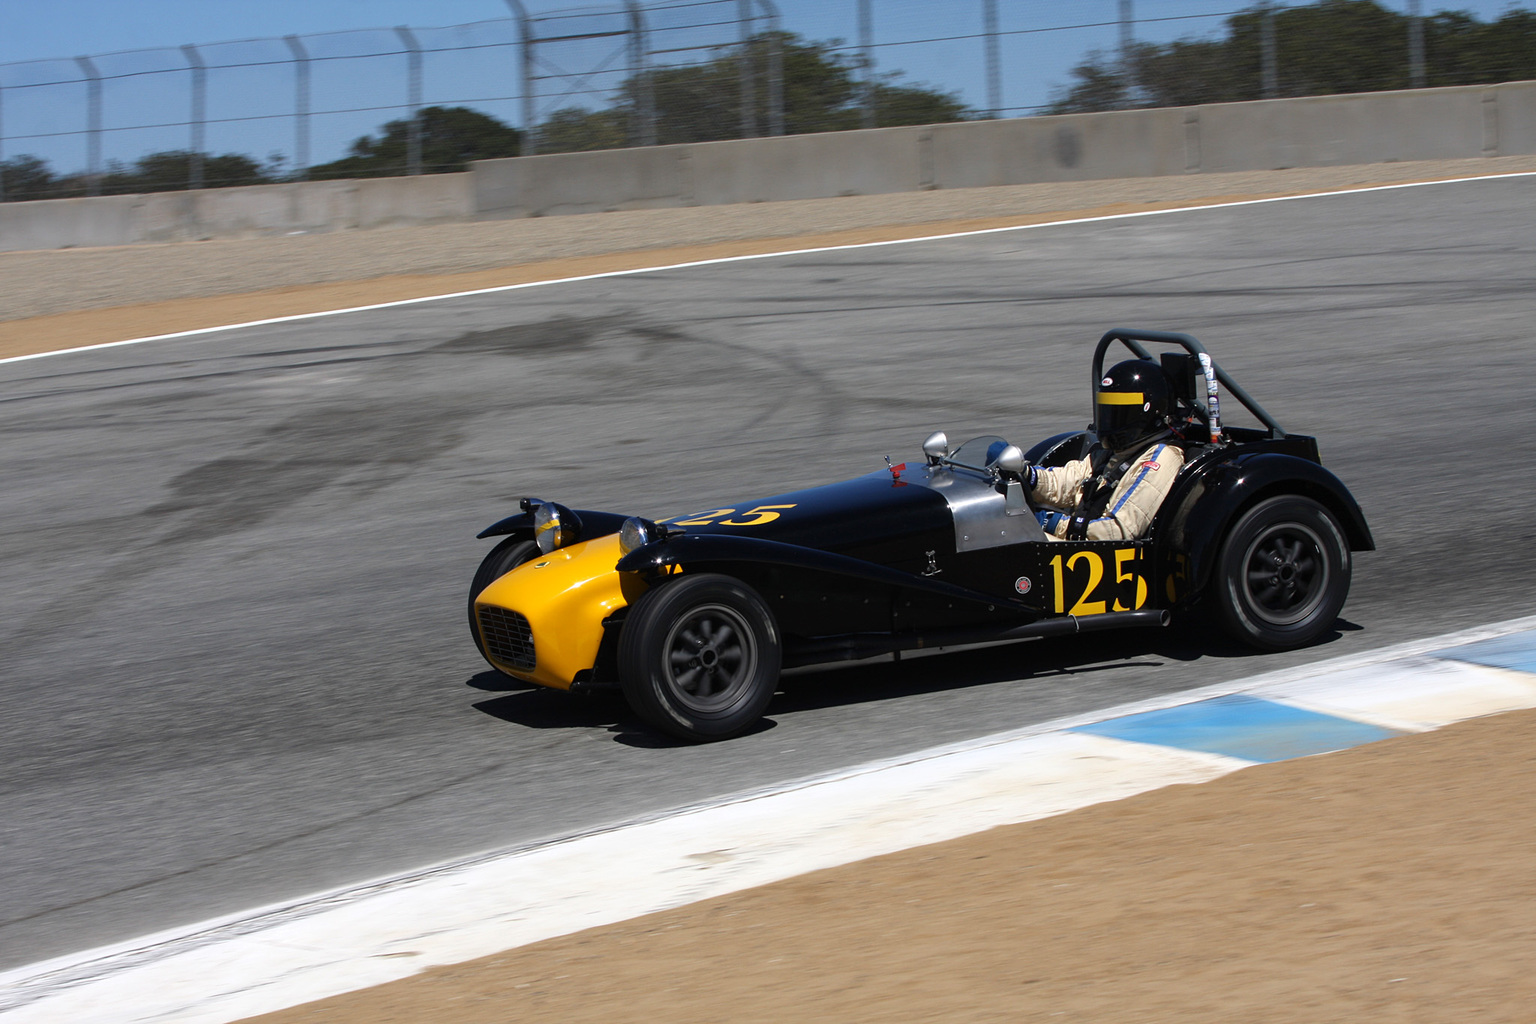 2013 Rolex Monterey Motorsports Reunion-13